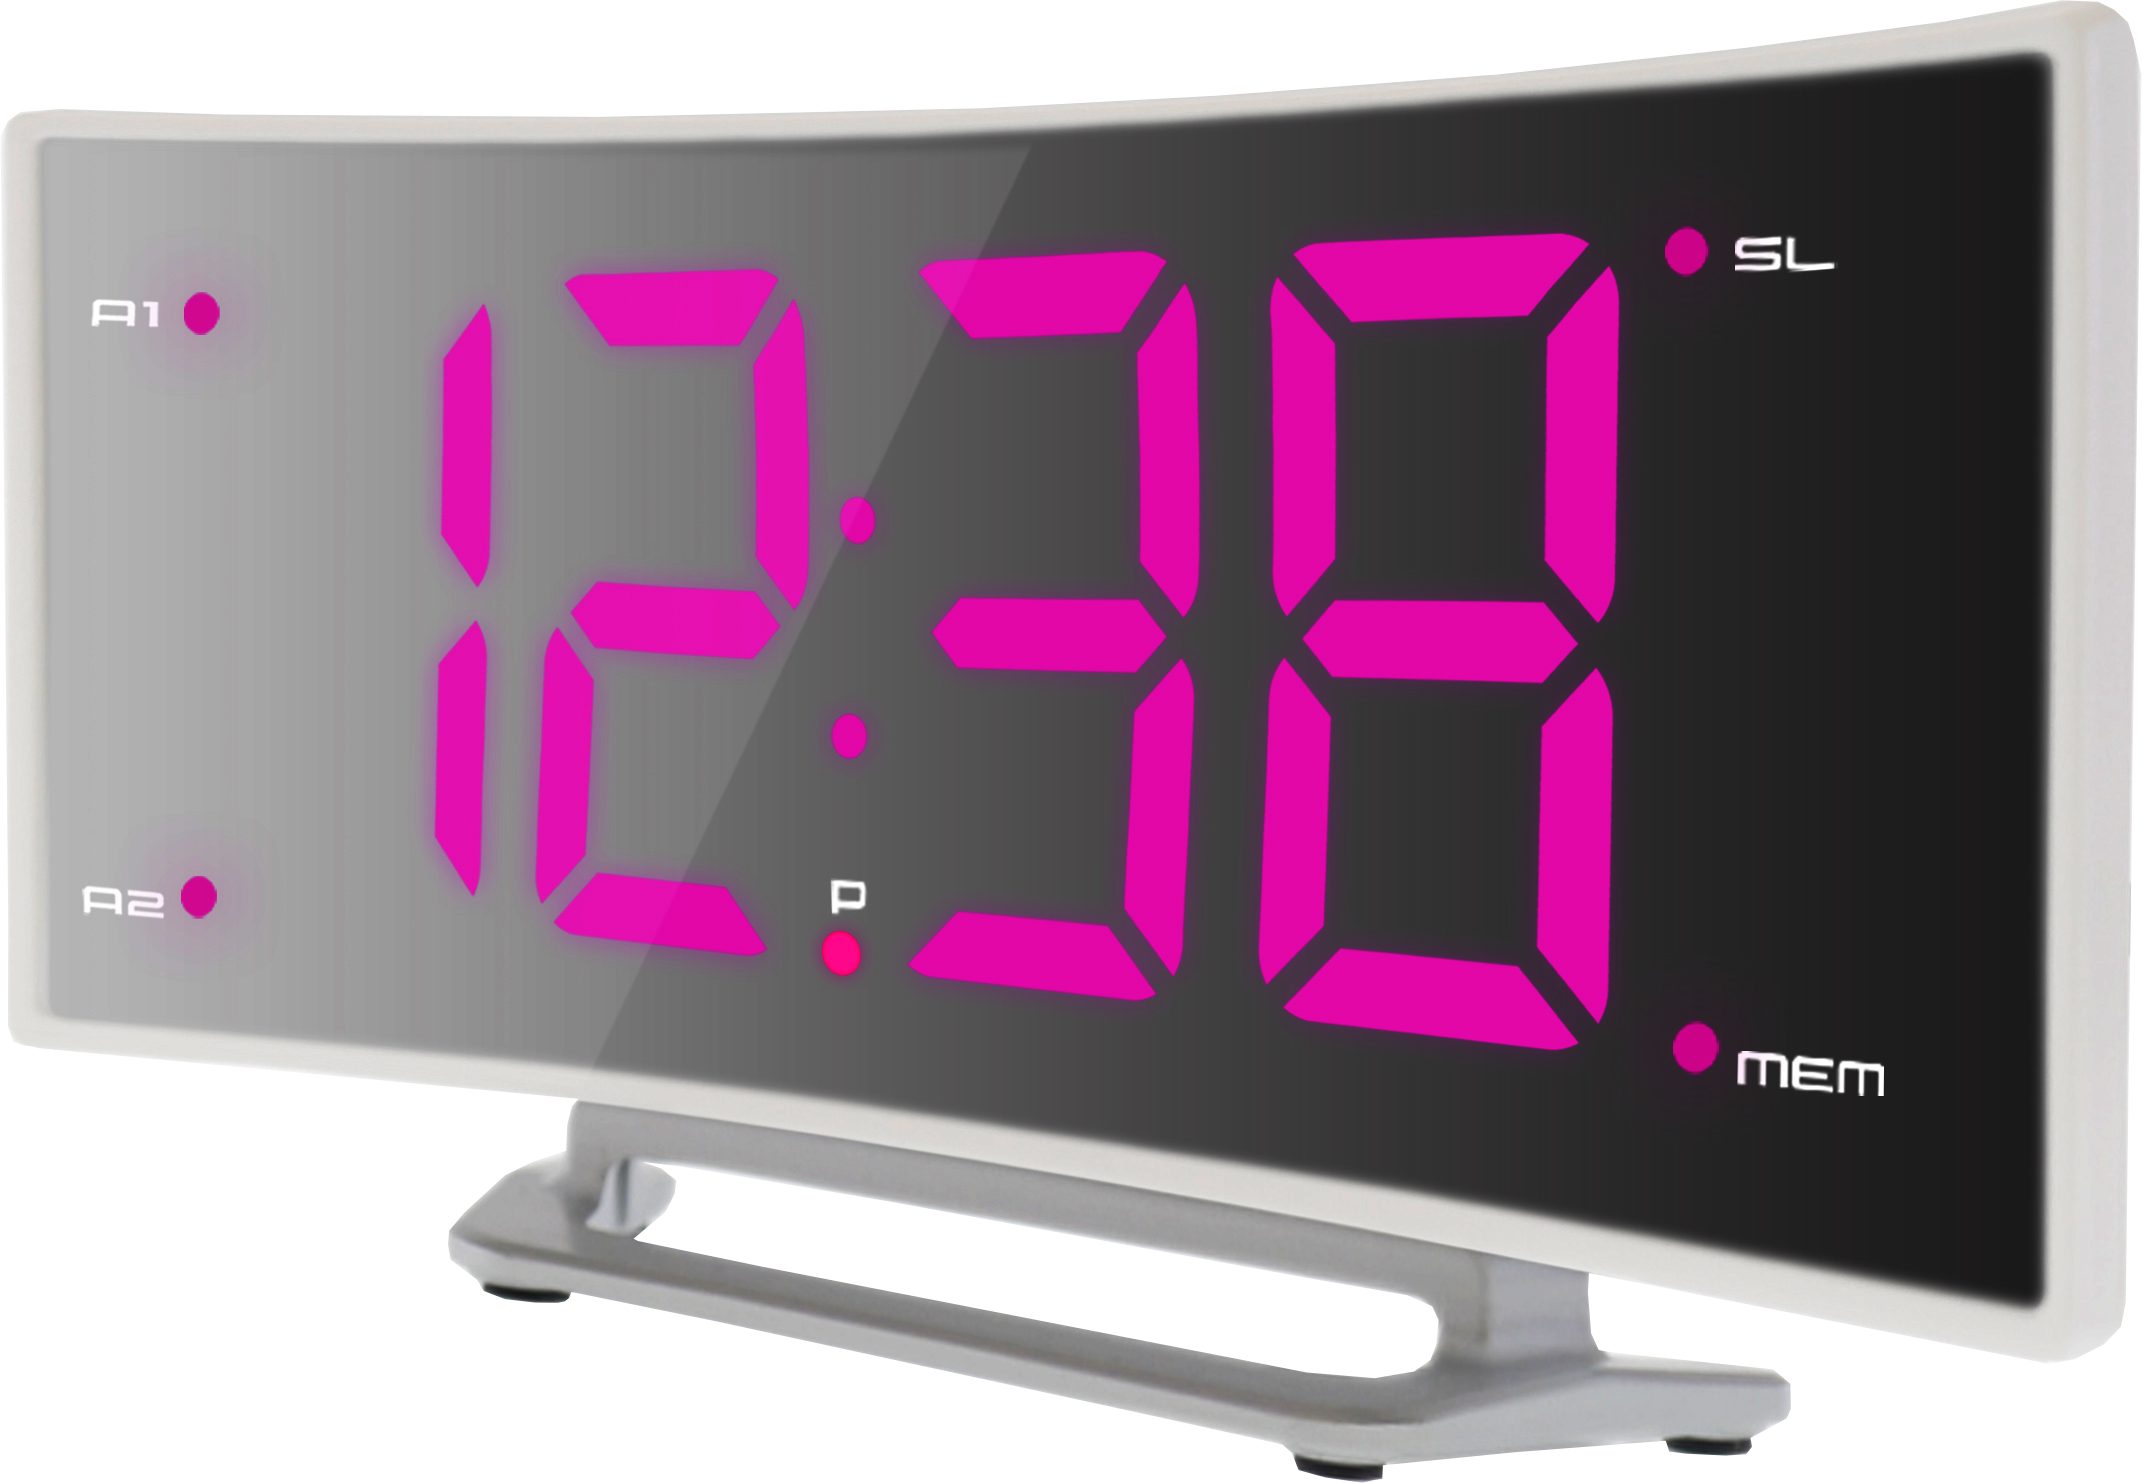 Wecker WT mit 460 pink Sleep-timer technoline Senderspeicher und